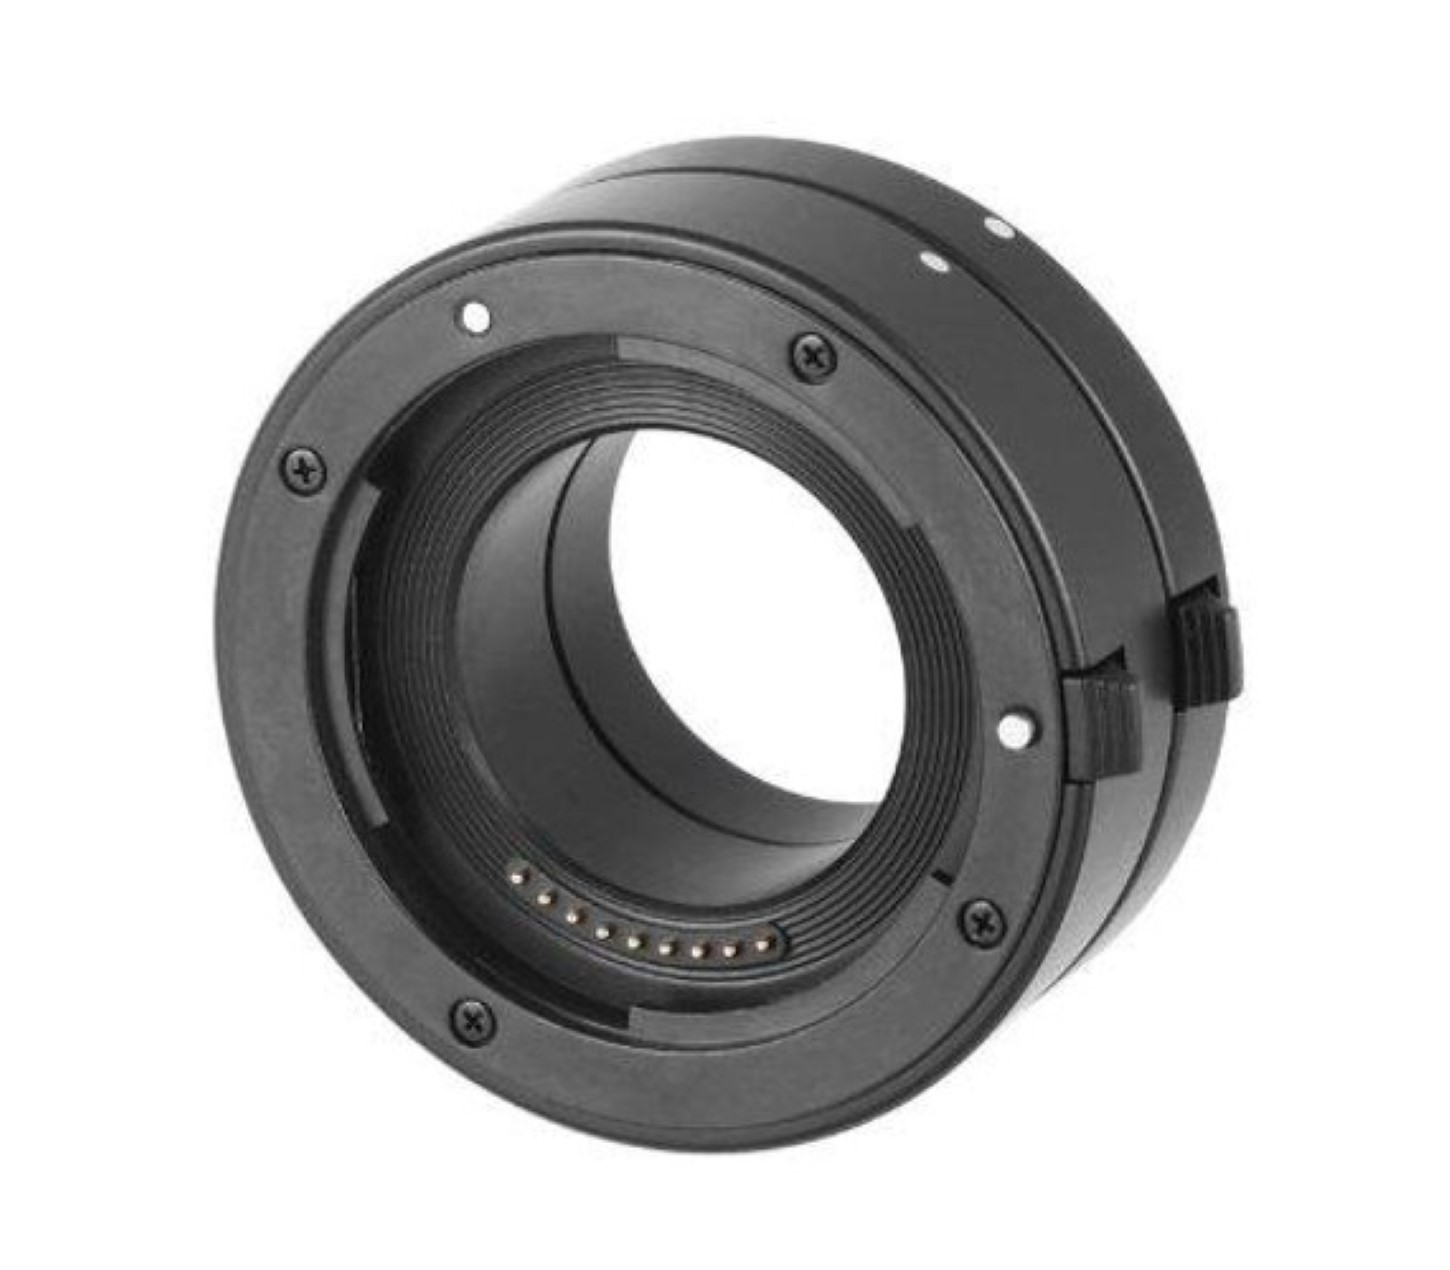 Automatik Makro Zwischenringe für Canon EOS M Systemkameras MK-C-AF3B